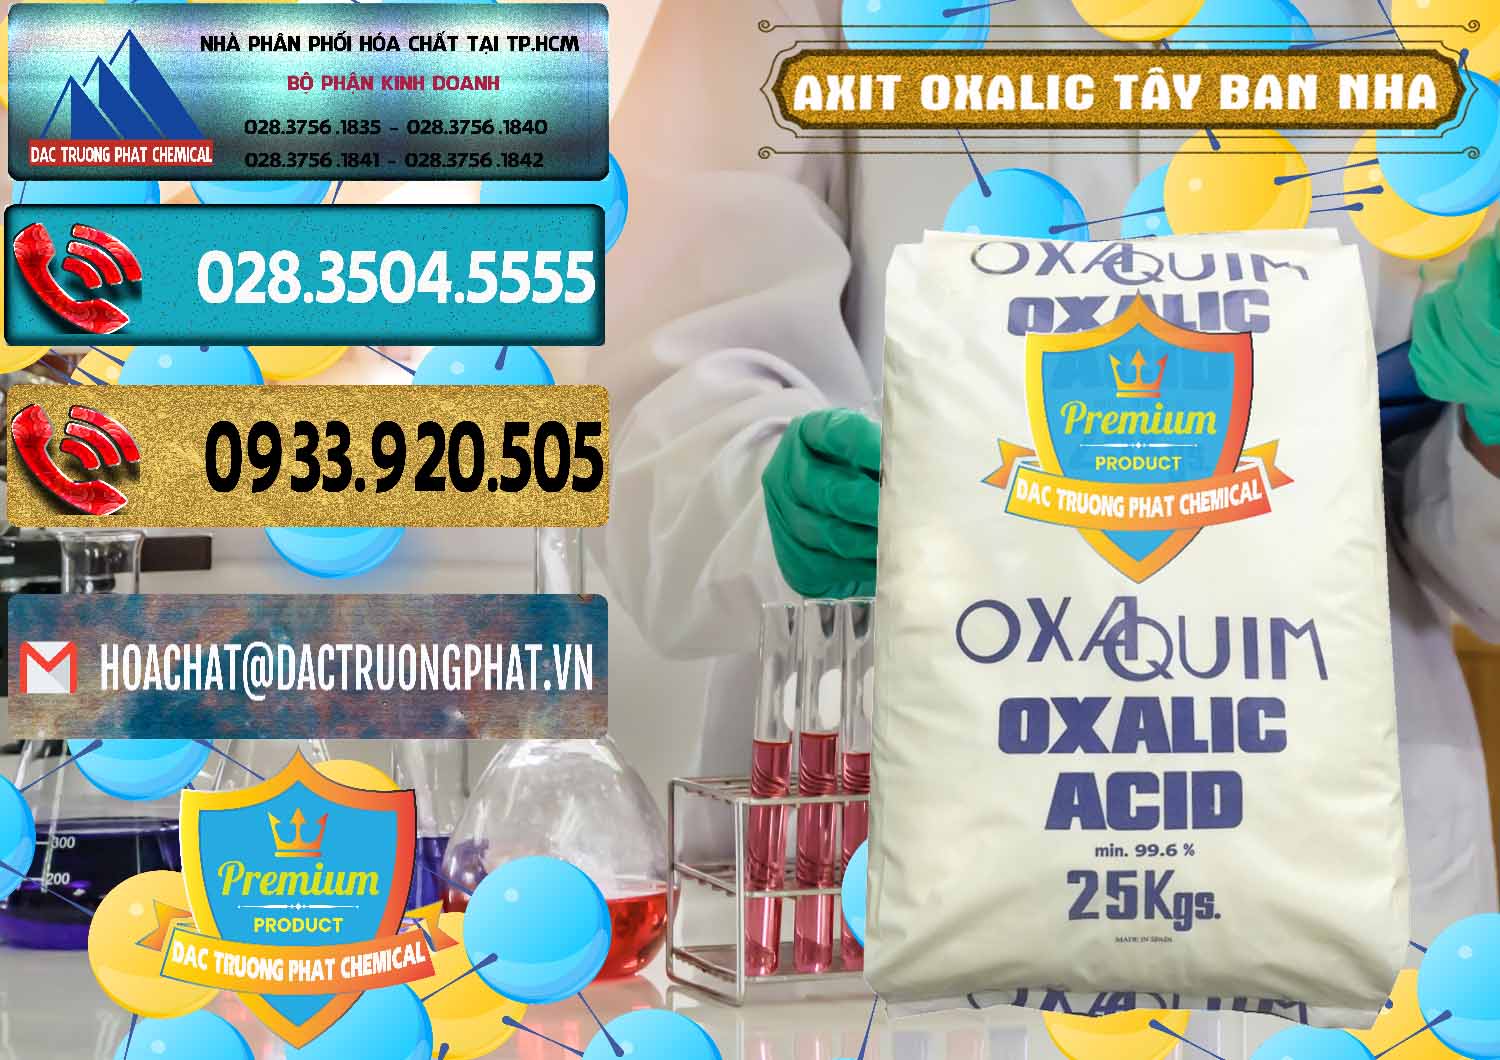 Đơn vị chuyên bán _ phân phối Acid Oxalic – Axit Oxalic 99.6% Tây Ban Nha Spain - 0269 - Cty phân phối và cung cấp hóa chất tại TP.HCM - hoachatdetnhuom.com